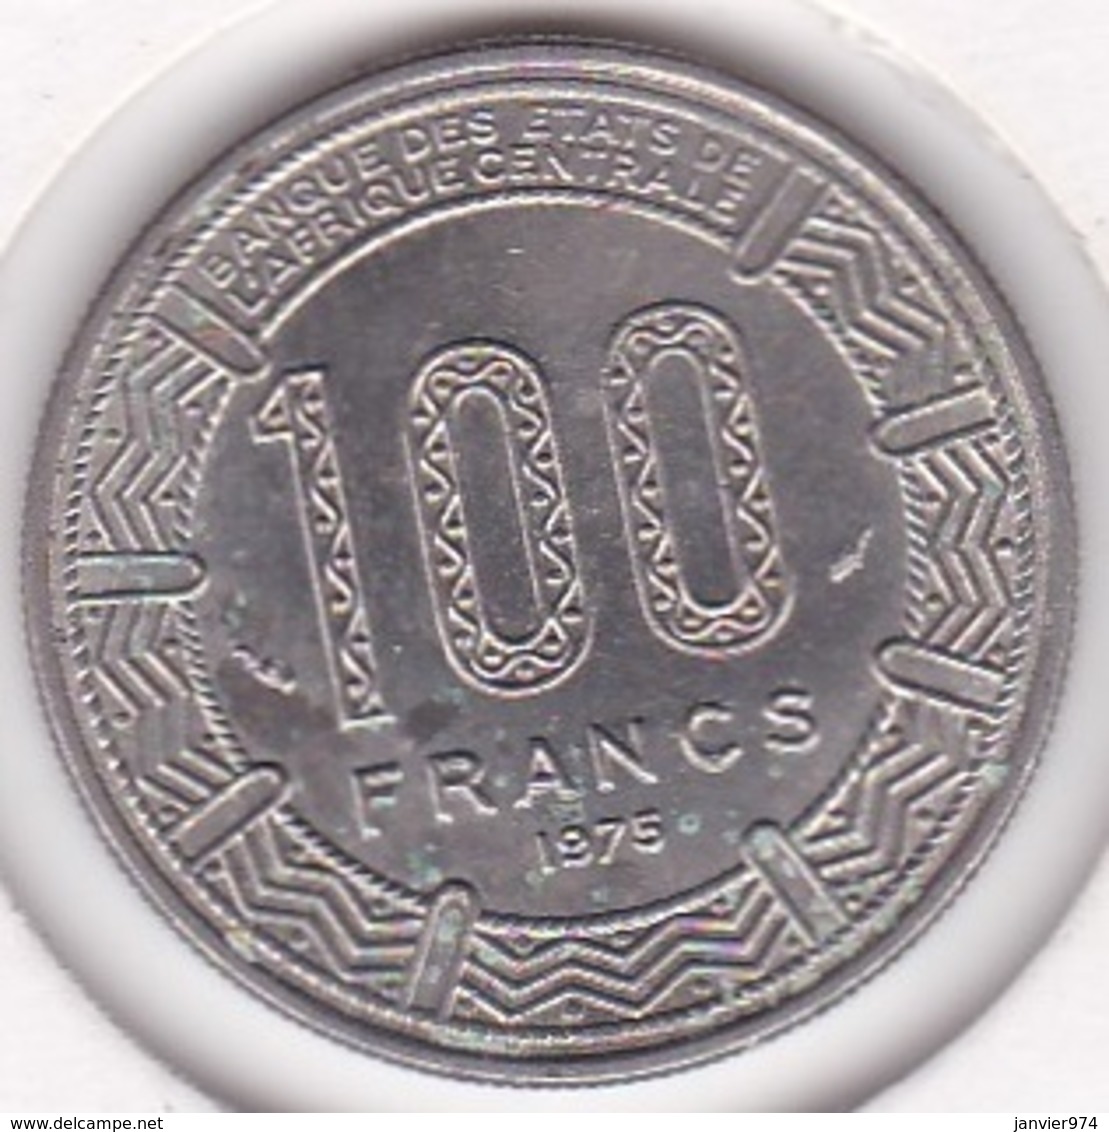 Republique Gabonaise. 100 Francs 1975 , En Cupro Nickel .KM# 13 - Gabon